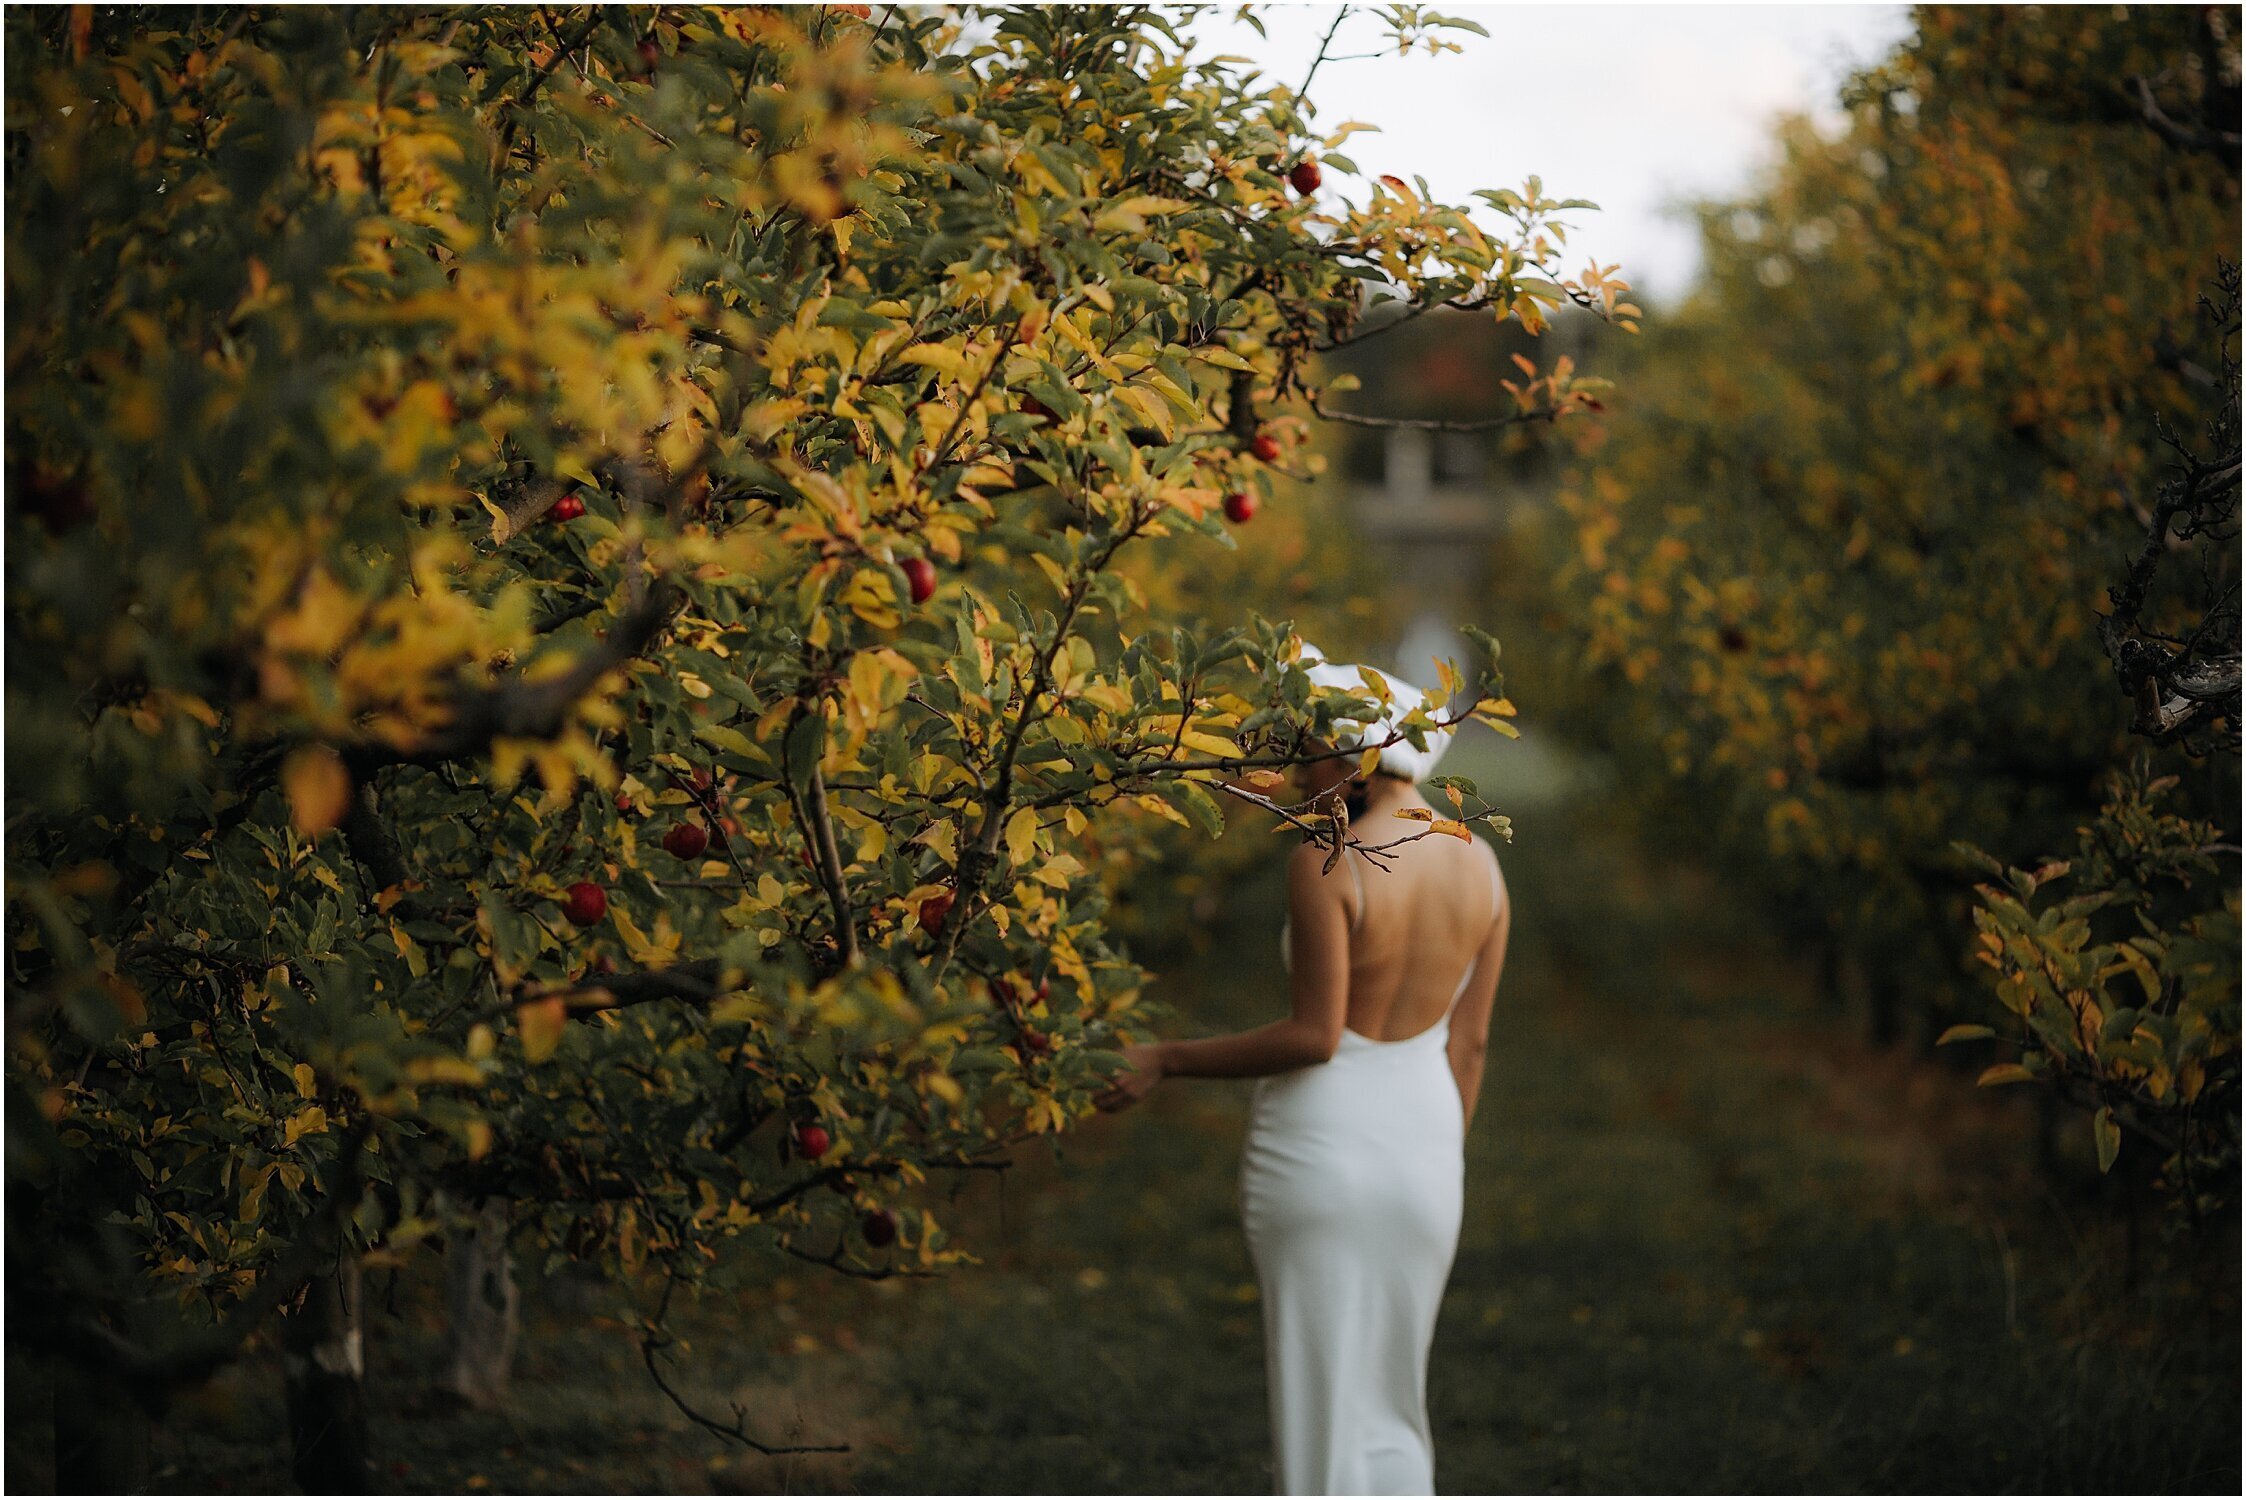 Zanda+Auckland+wedding+photographer+unique+portrait+photoshoot+ideas+autumn+winter+Windmill+apple+orchard+Coatesville+New+Zealand_25.jpeg